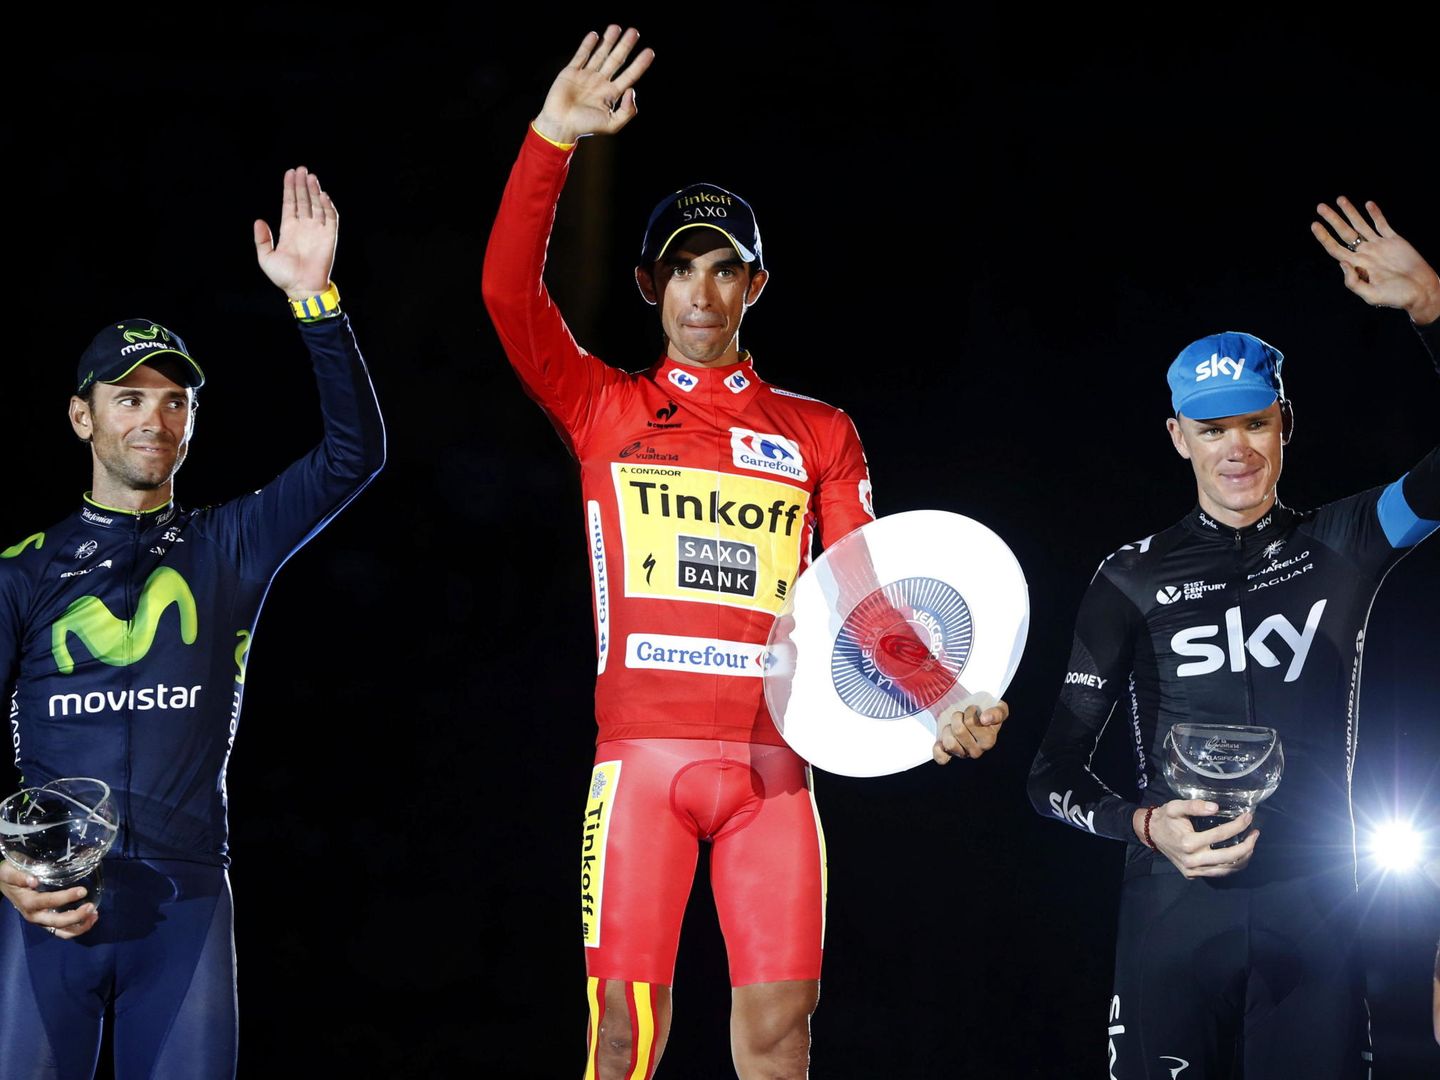 La Vuelta a España de 2014 es la única en la que Contador y Froome han compartido podio. (EFE)